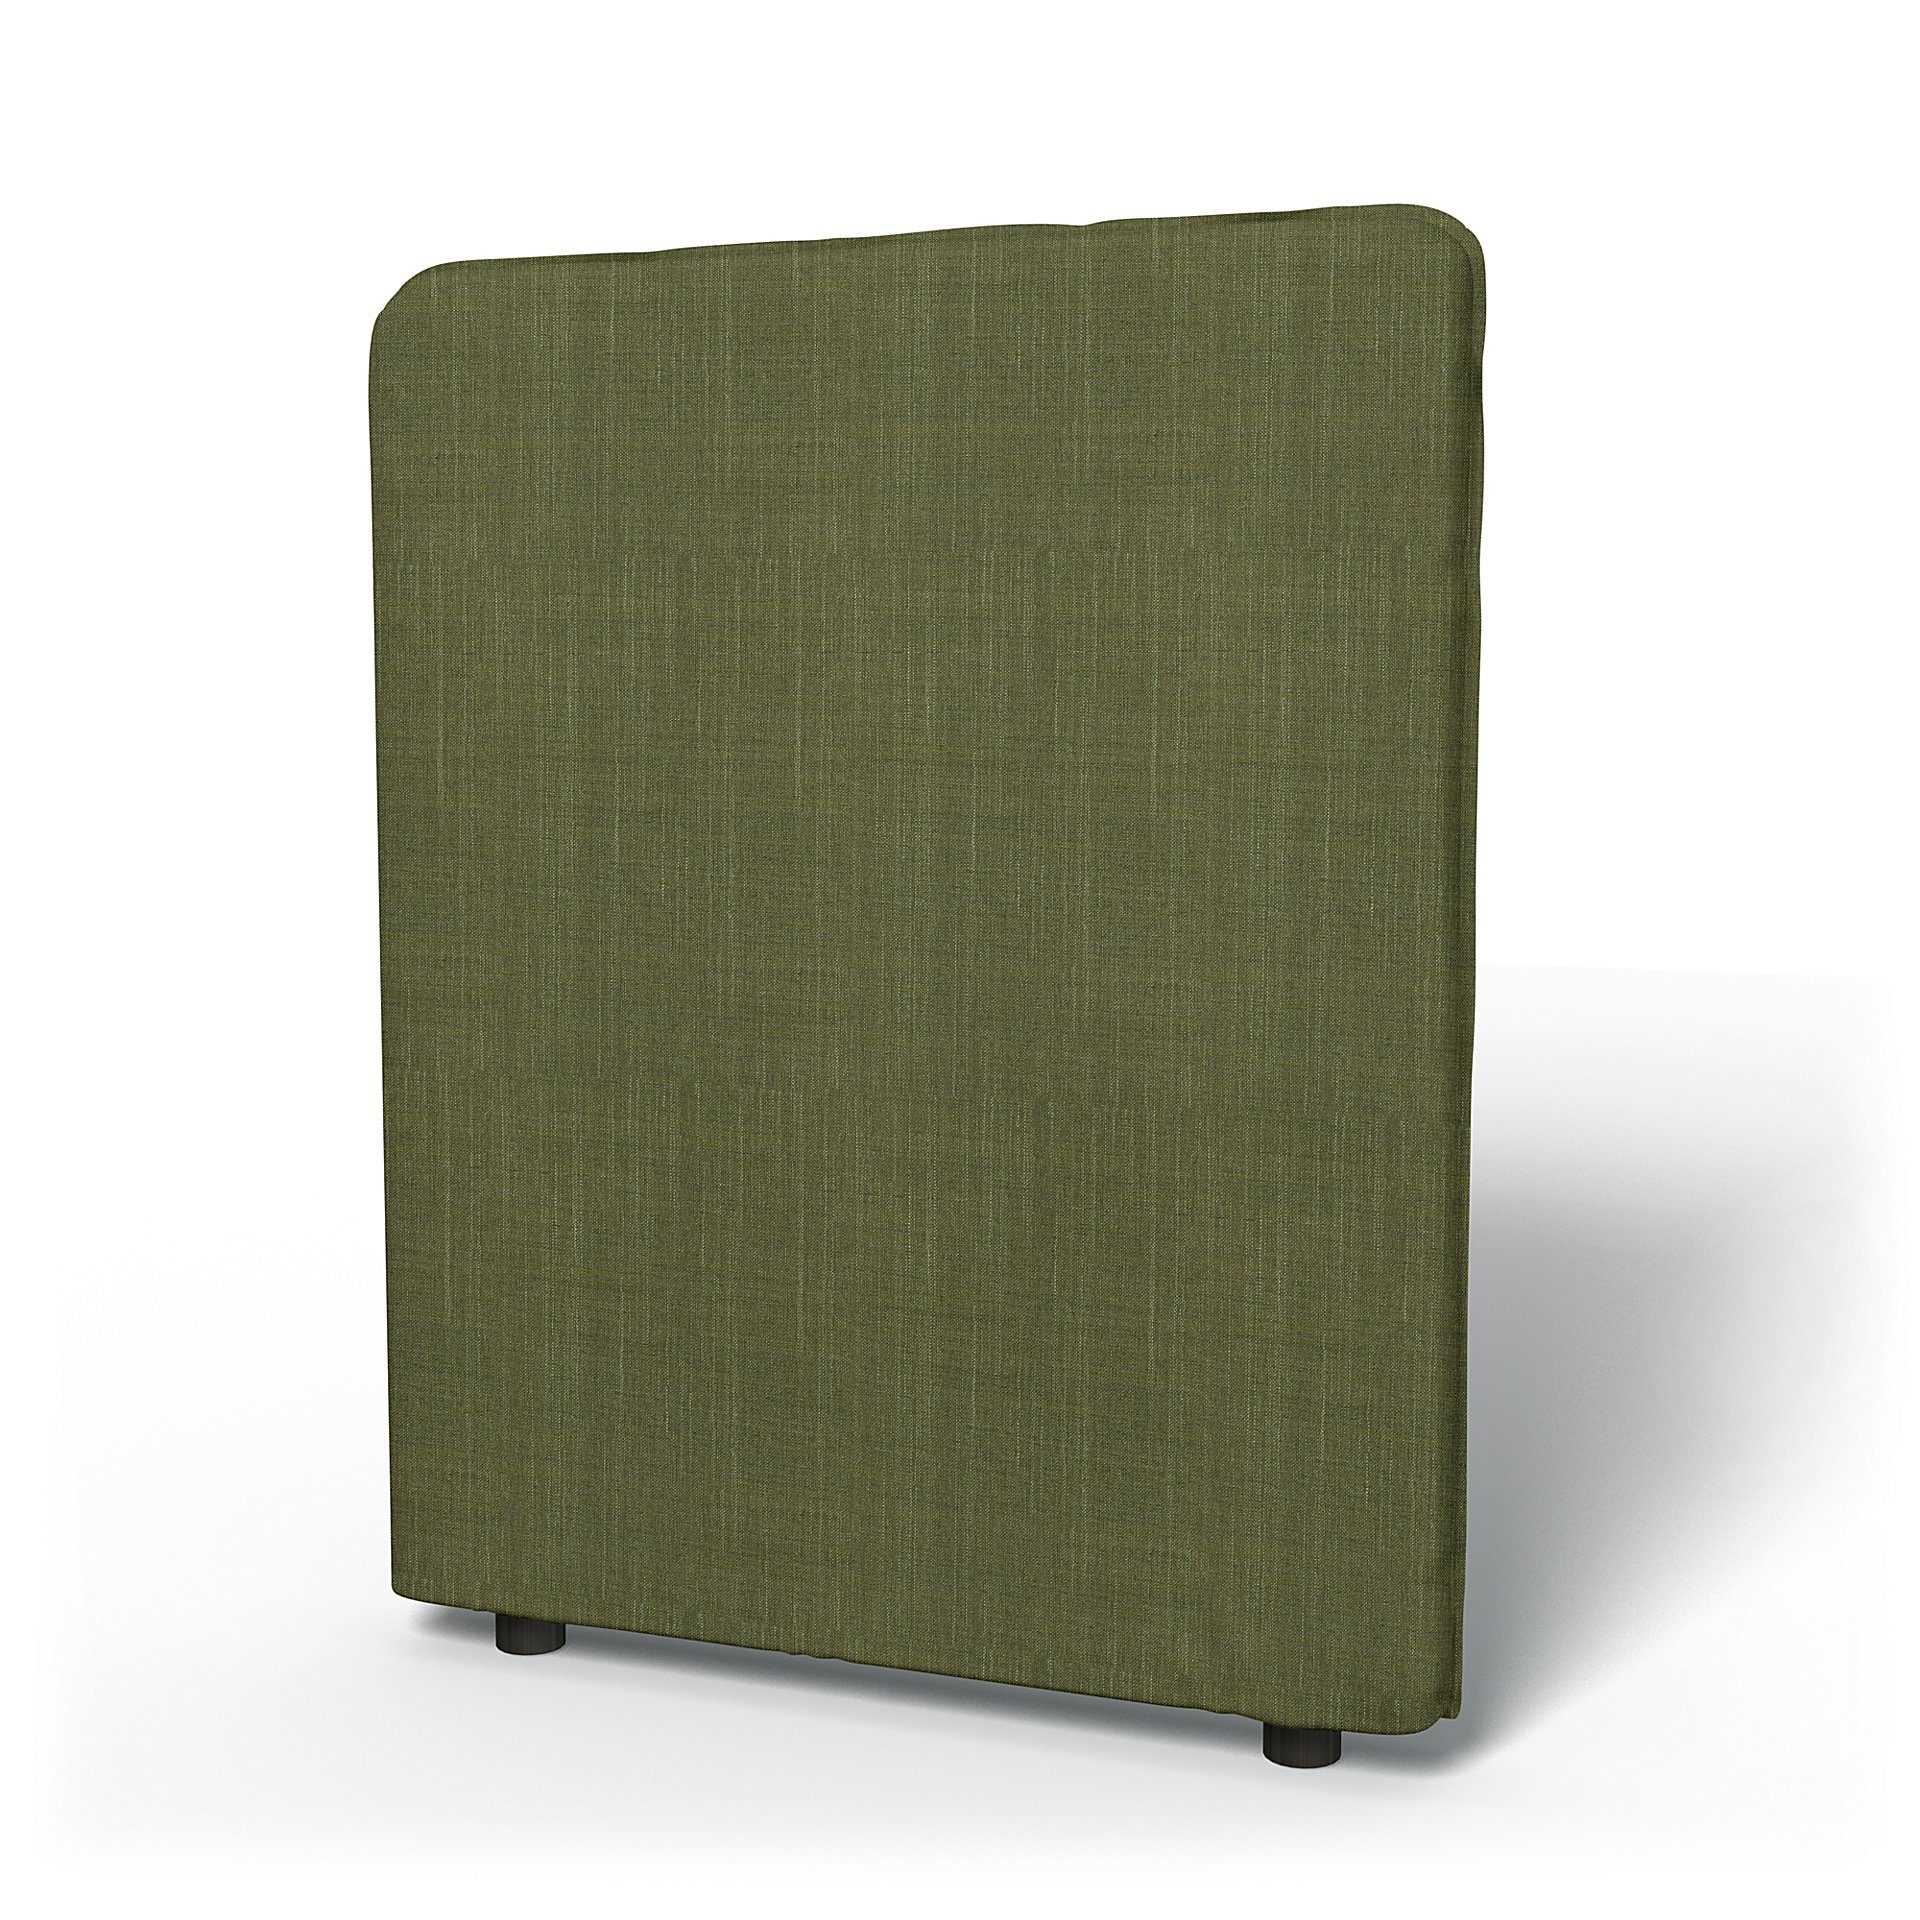 IKEA - Vallentuna High Backrest Cover 80x100cm 32x39in, Moss Green, Boucle & Texture - Bemz